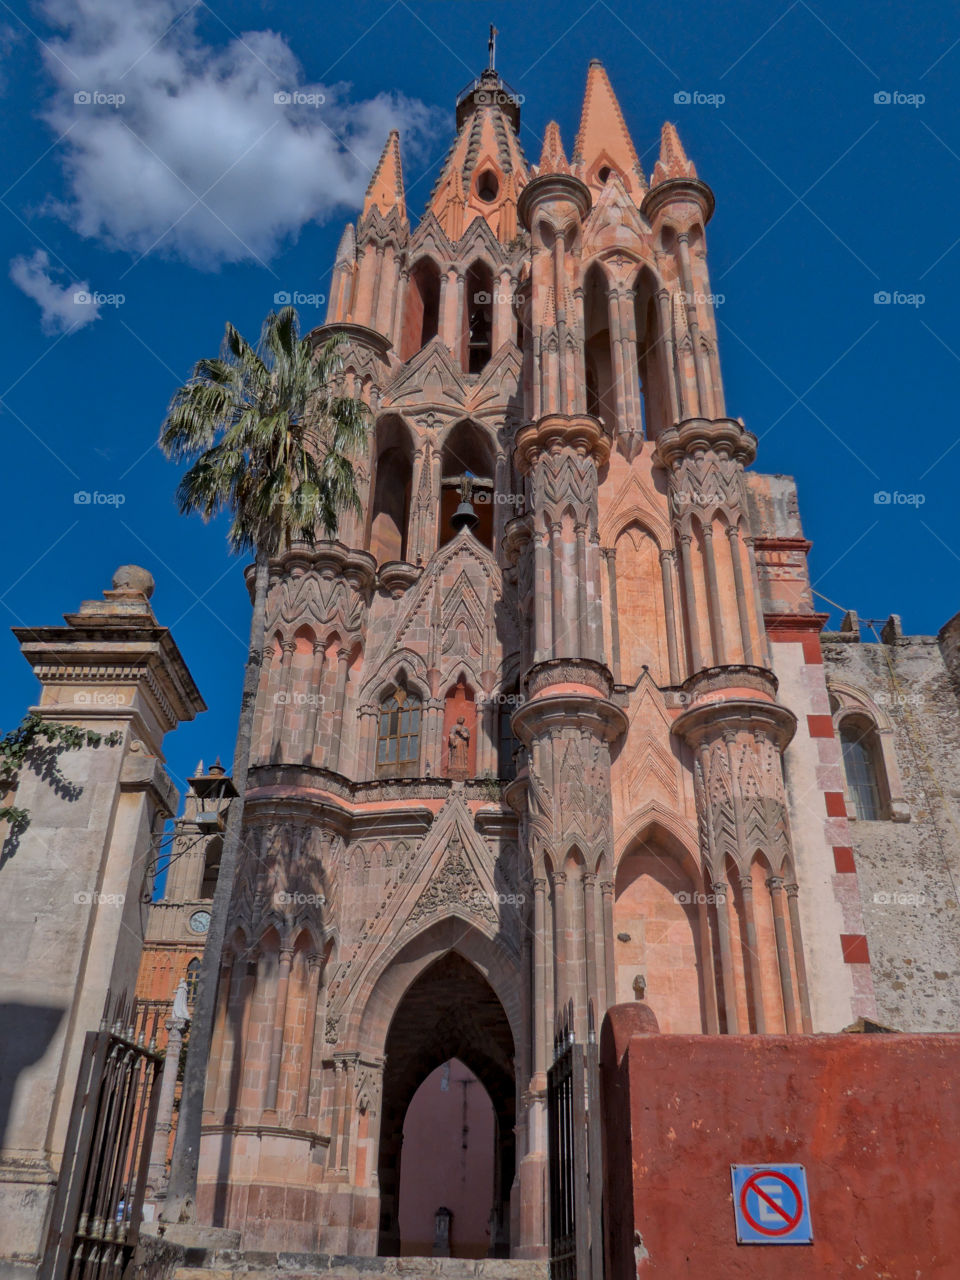 Low angle view of "Parroquia de San Miguel Arcangel" in San Miguel de Allende, Guanajuato, Mexico